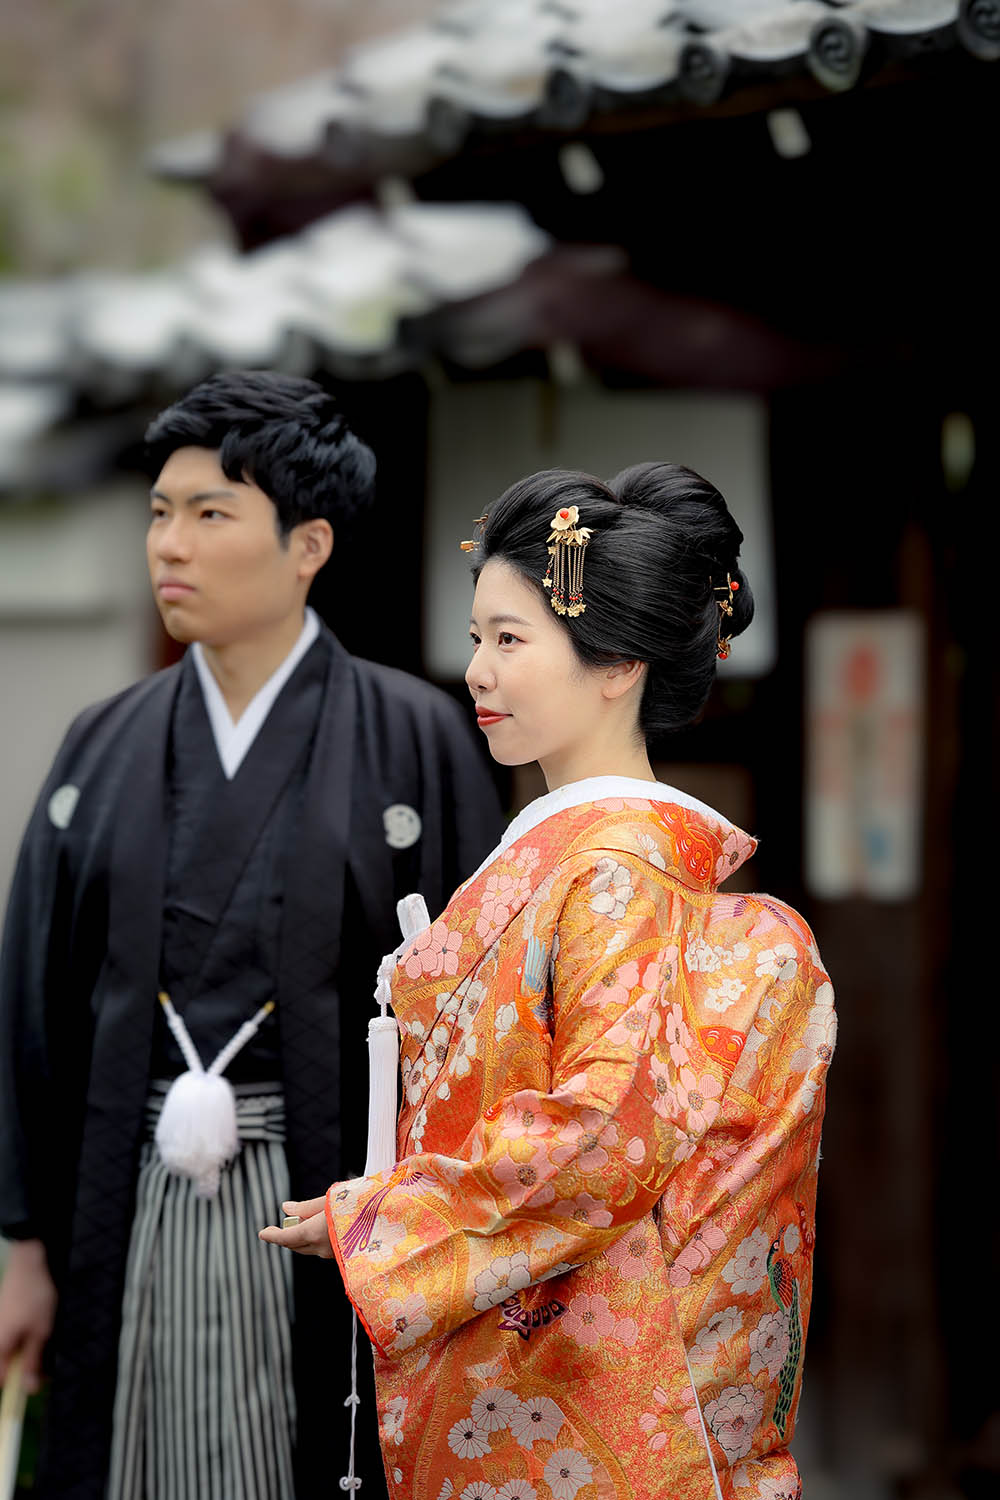 妙蓮寺様塔頭寺院にて新日本髪がとてもお似合いの花嫁様。